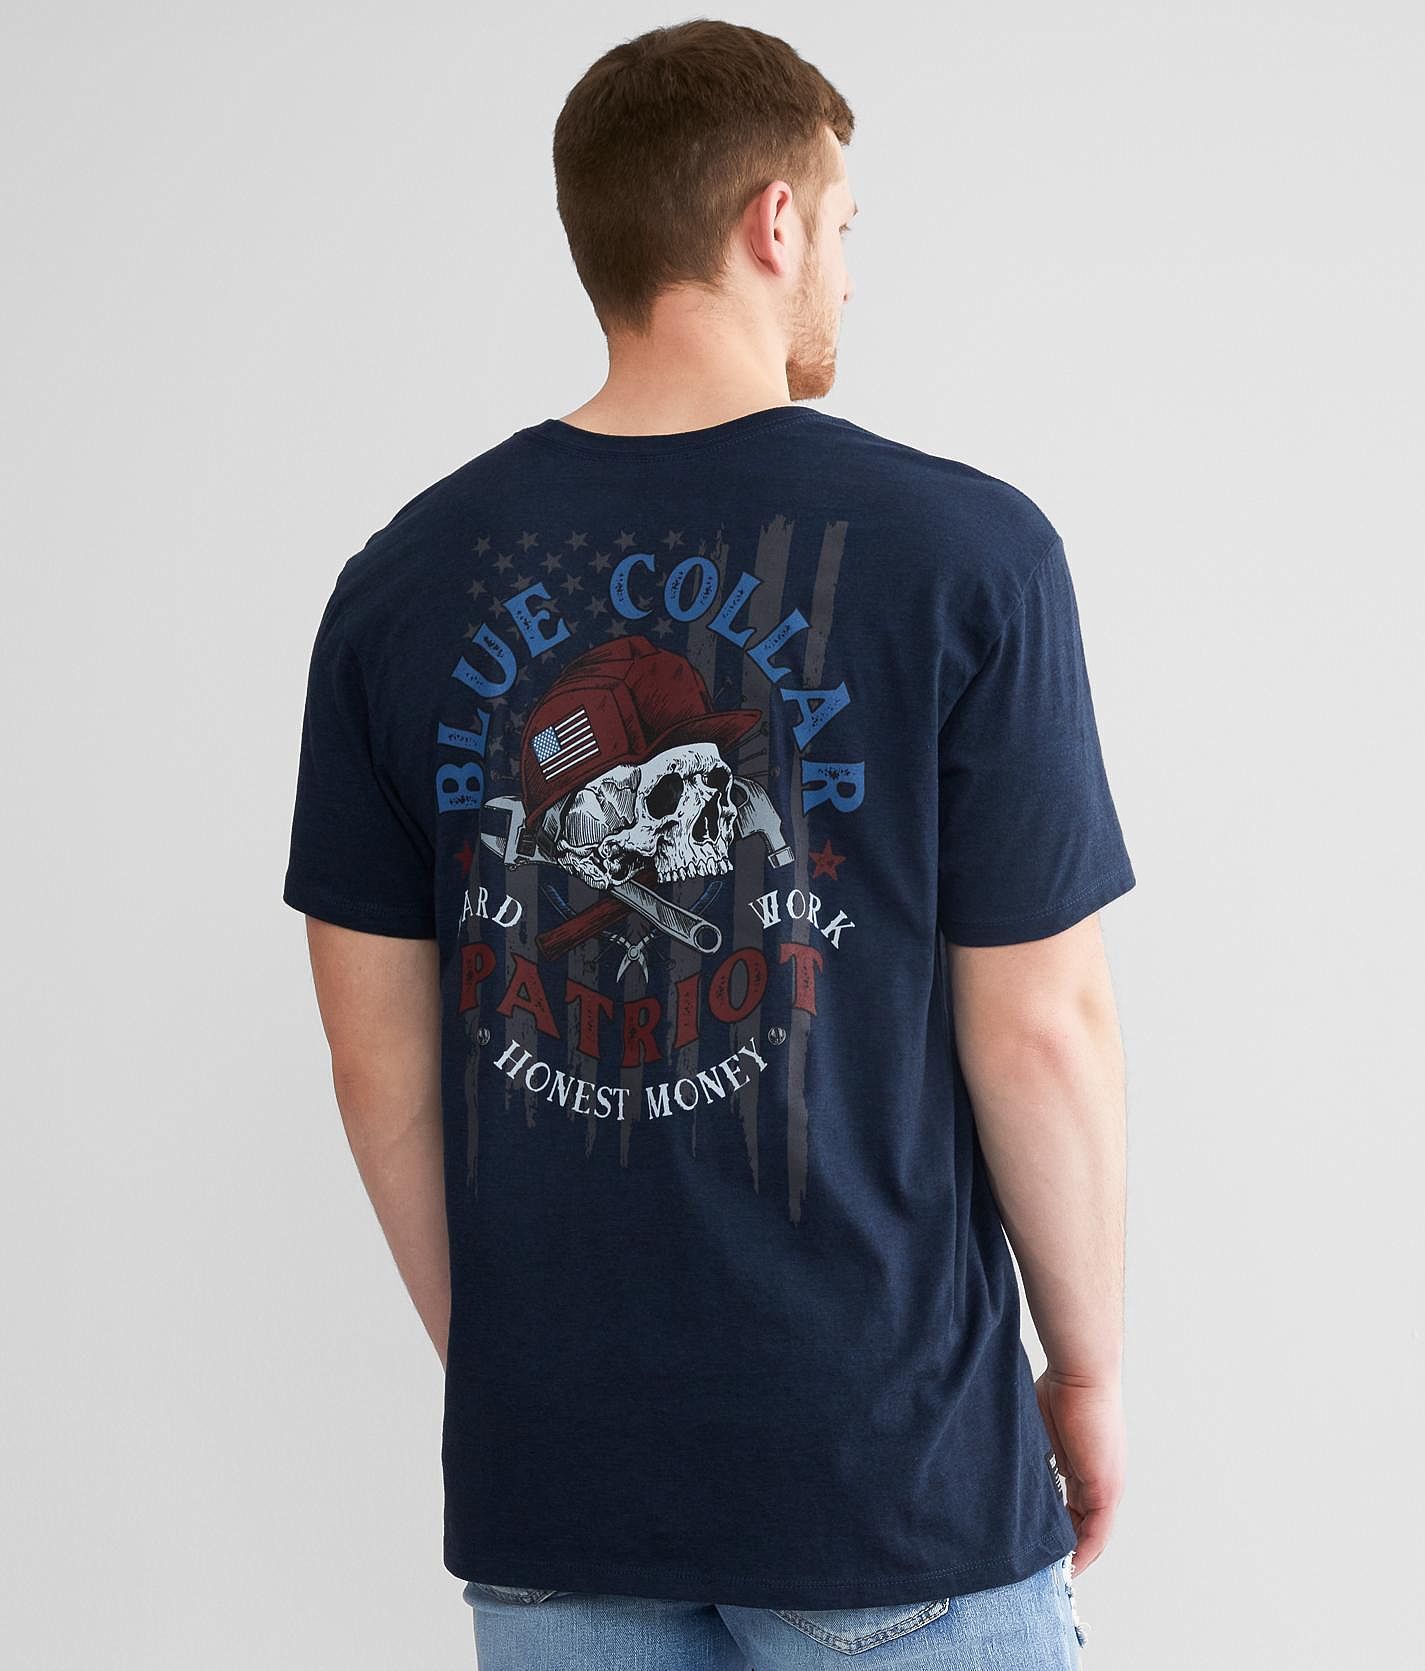 Howitzer Honest Money T-Shirt  - Blue - male - Size: Extra Large